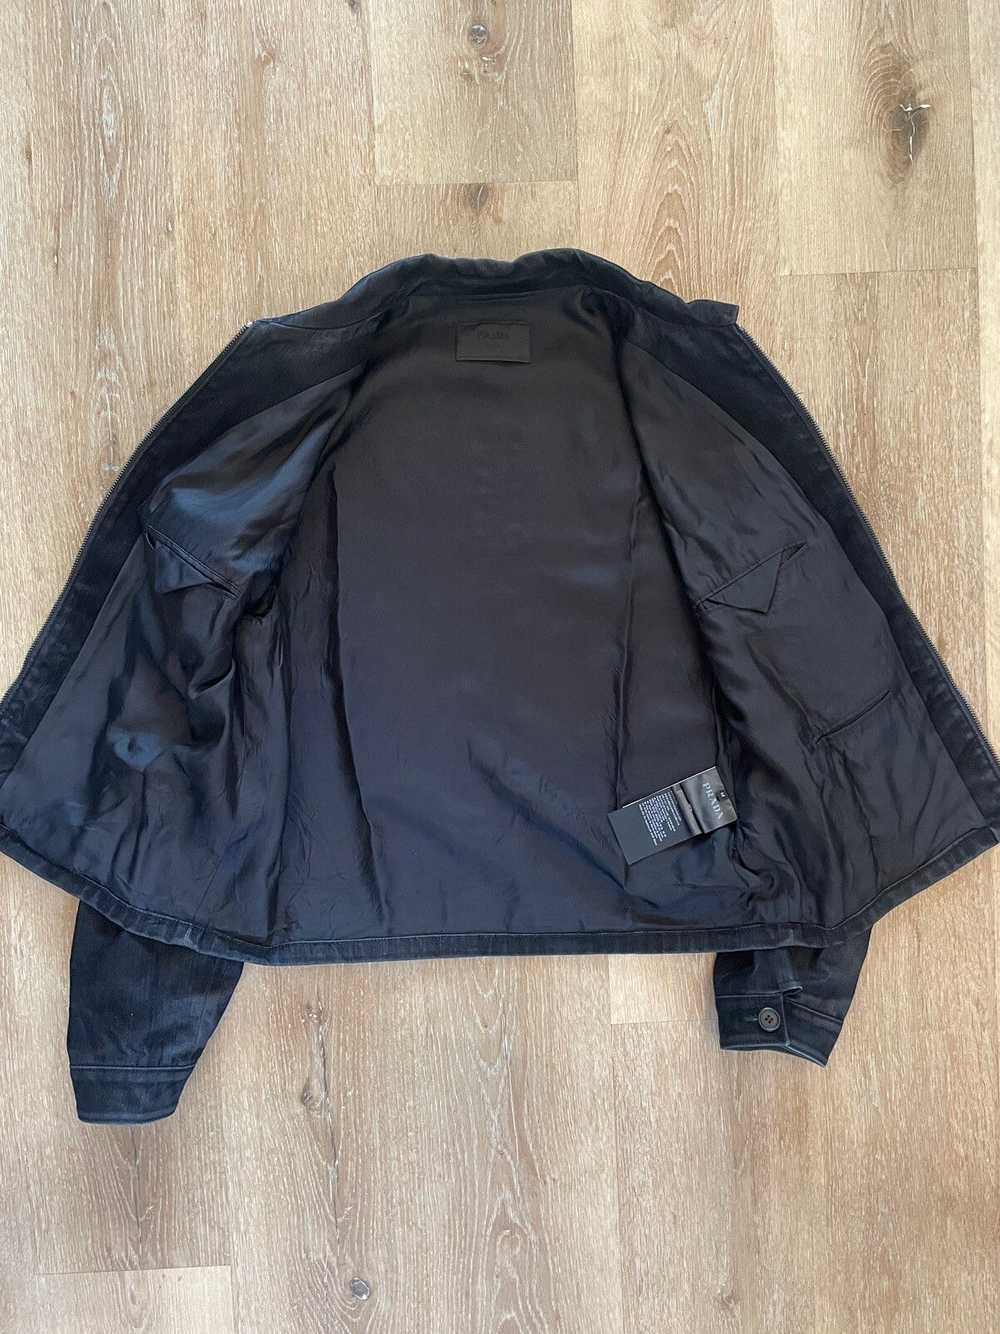 Prada SS22 Velvet Denim Blouson Jacket worn by Fr… - image 5